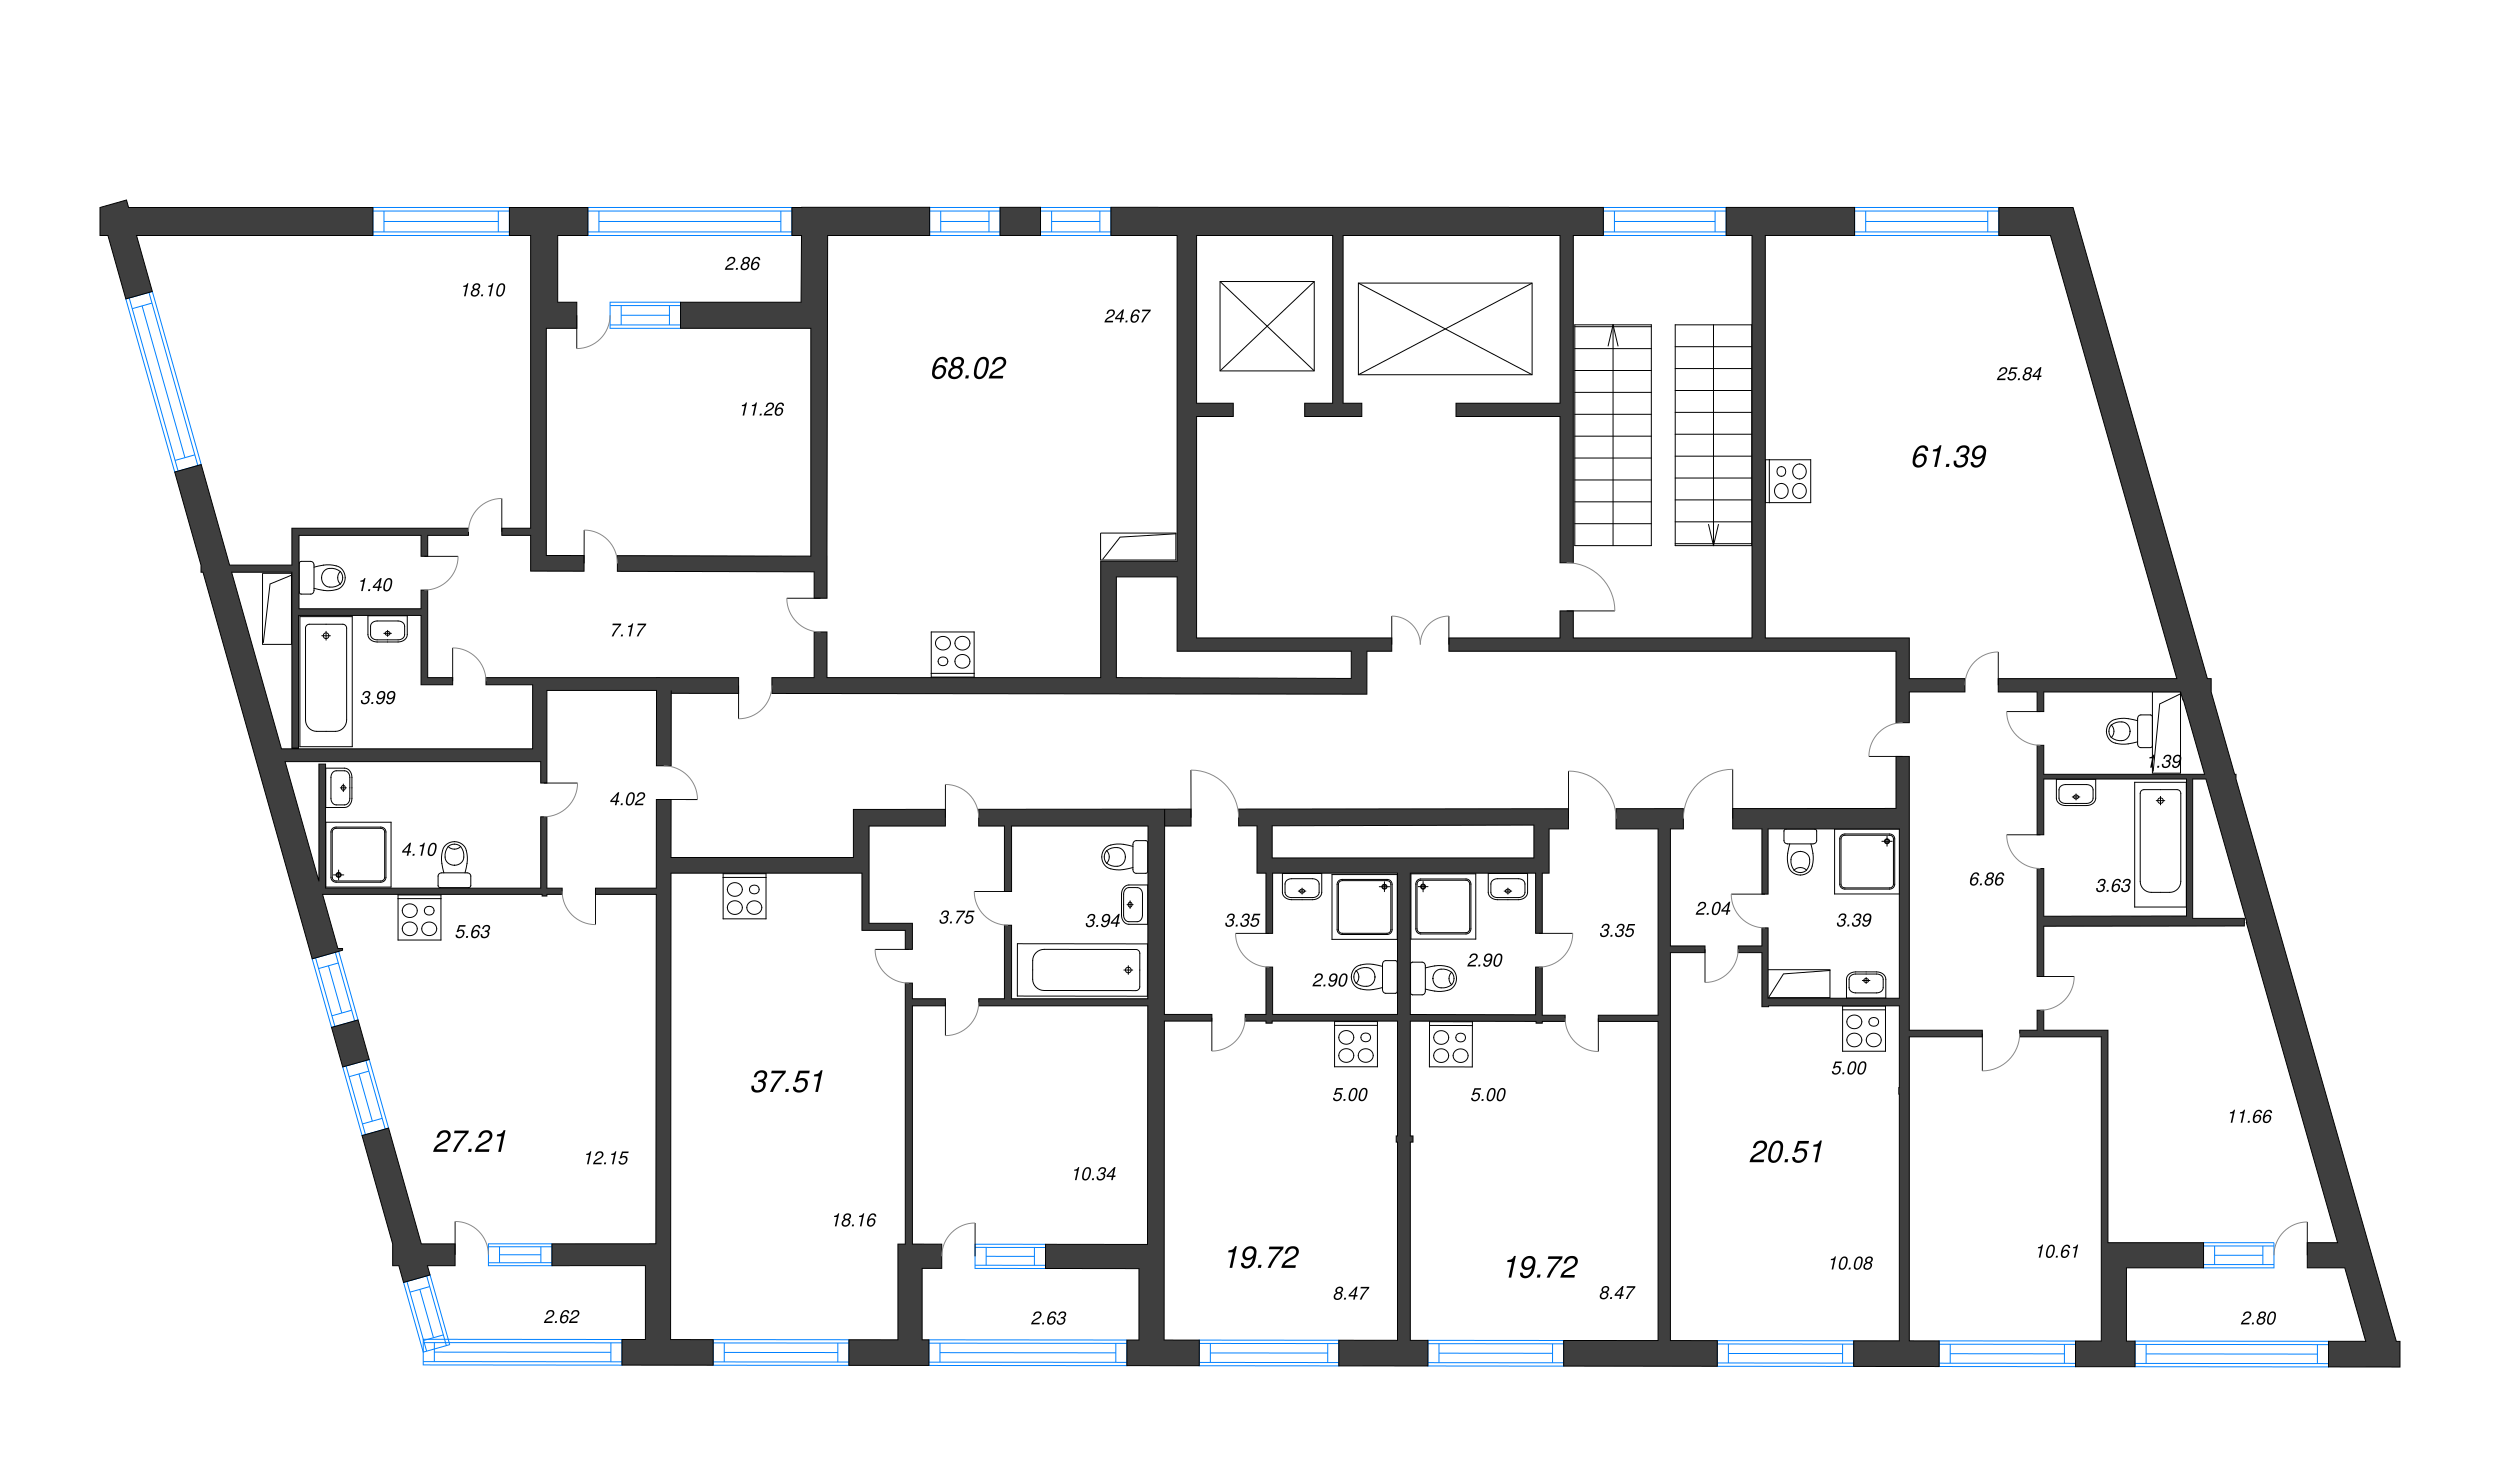 3-комнатная (Евро) квартира, 61.39 м² в ЖК "Морская набережная" - планировка этажа